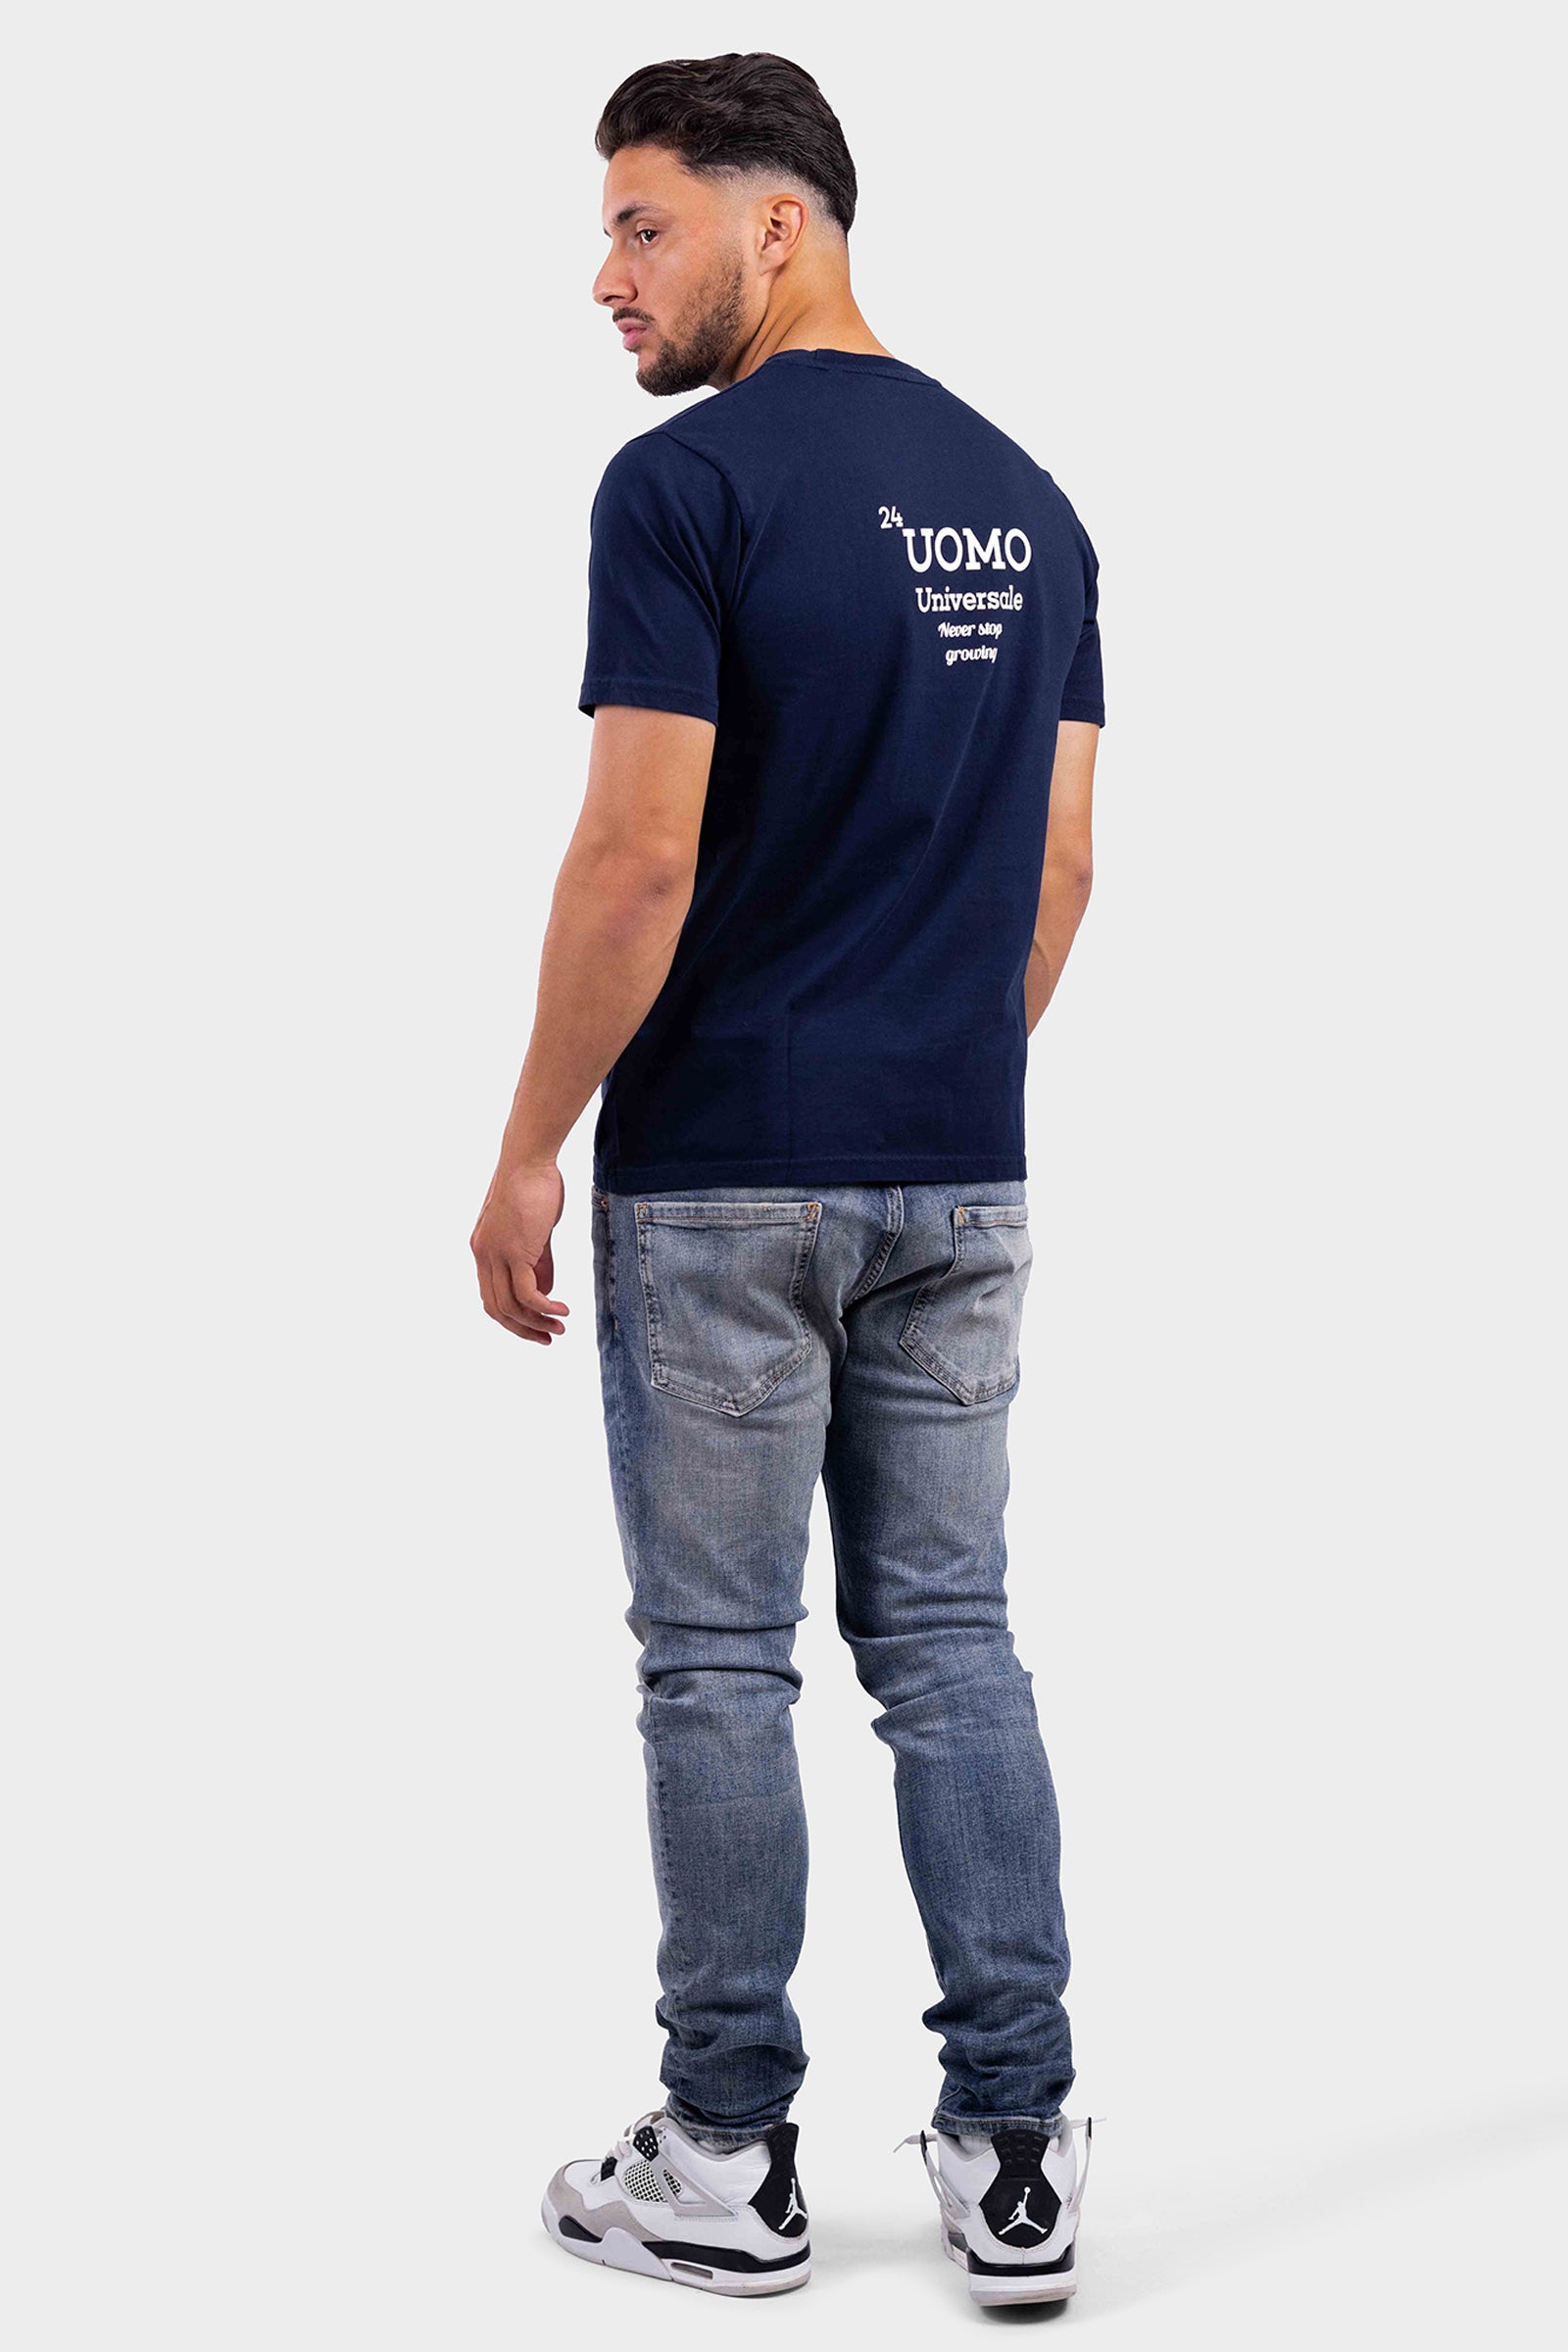 Universale T-Shirt Donkerblauw